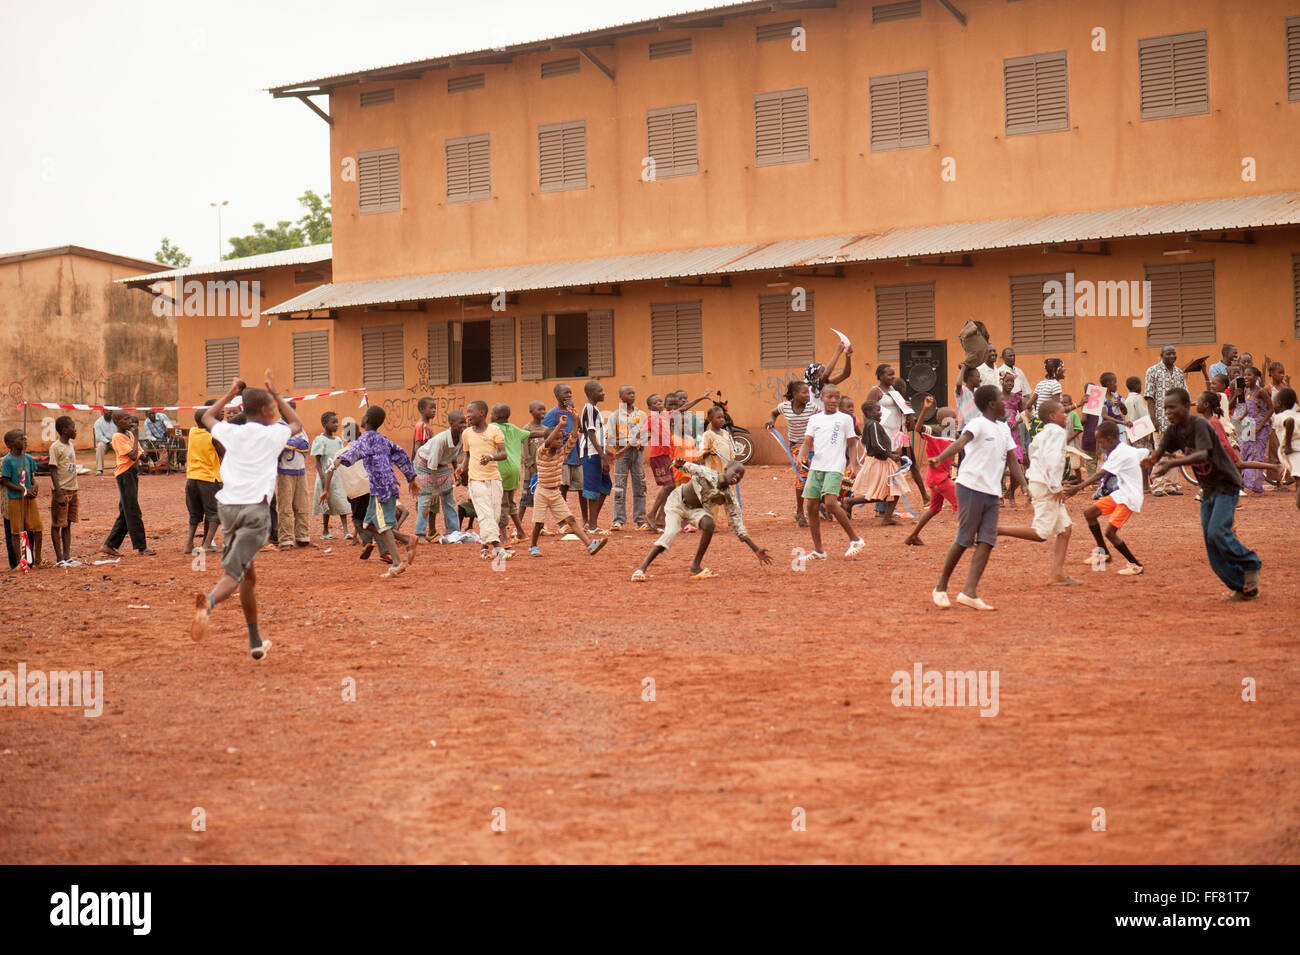 Mali, Afrika - schwarz / weiß-Leute, die Spaß Fußball spielen Stockfoto